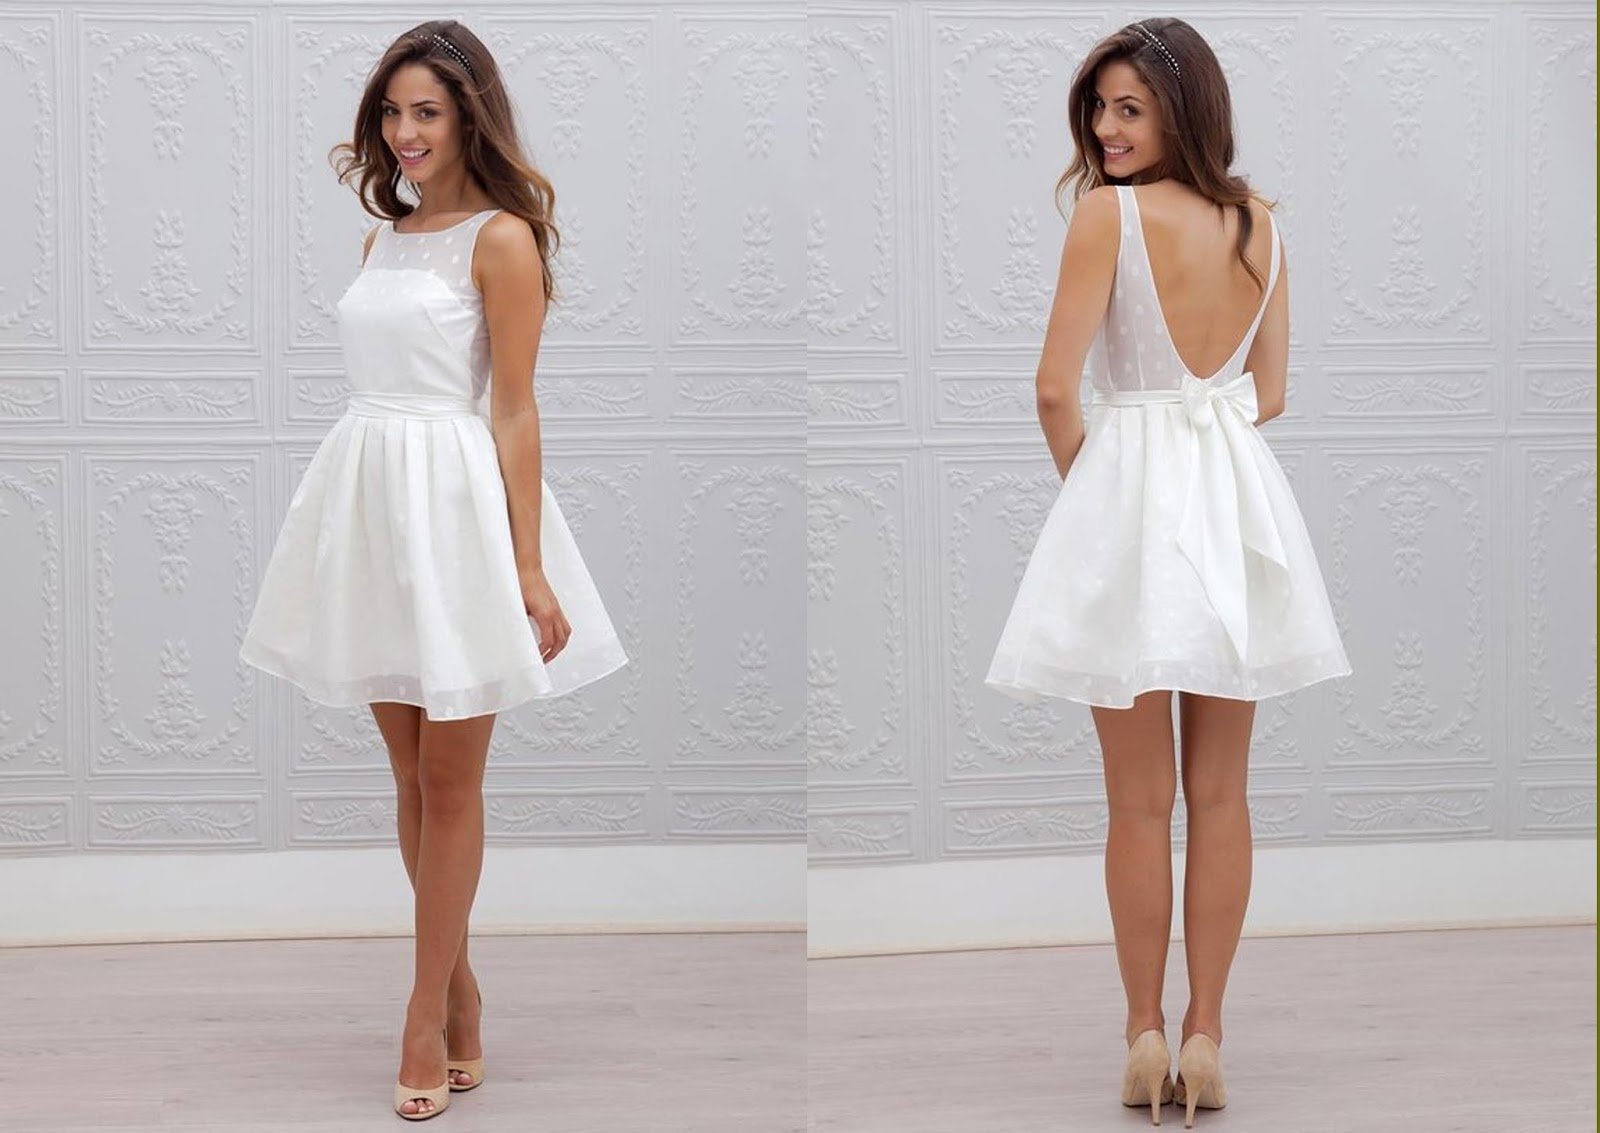 Недорогие белые платья. Короткое свадебное платье. Белое платье. Белое короткое платье. Белое короткое свадебное платье.